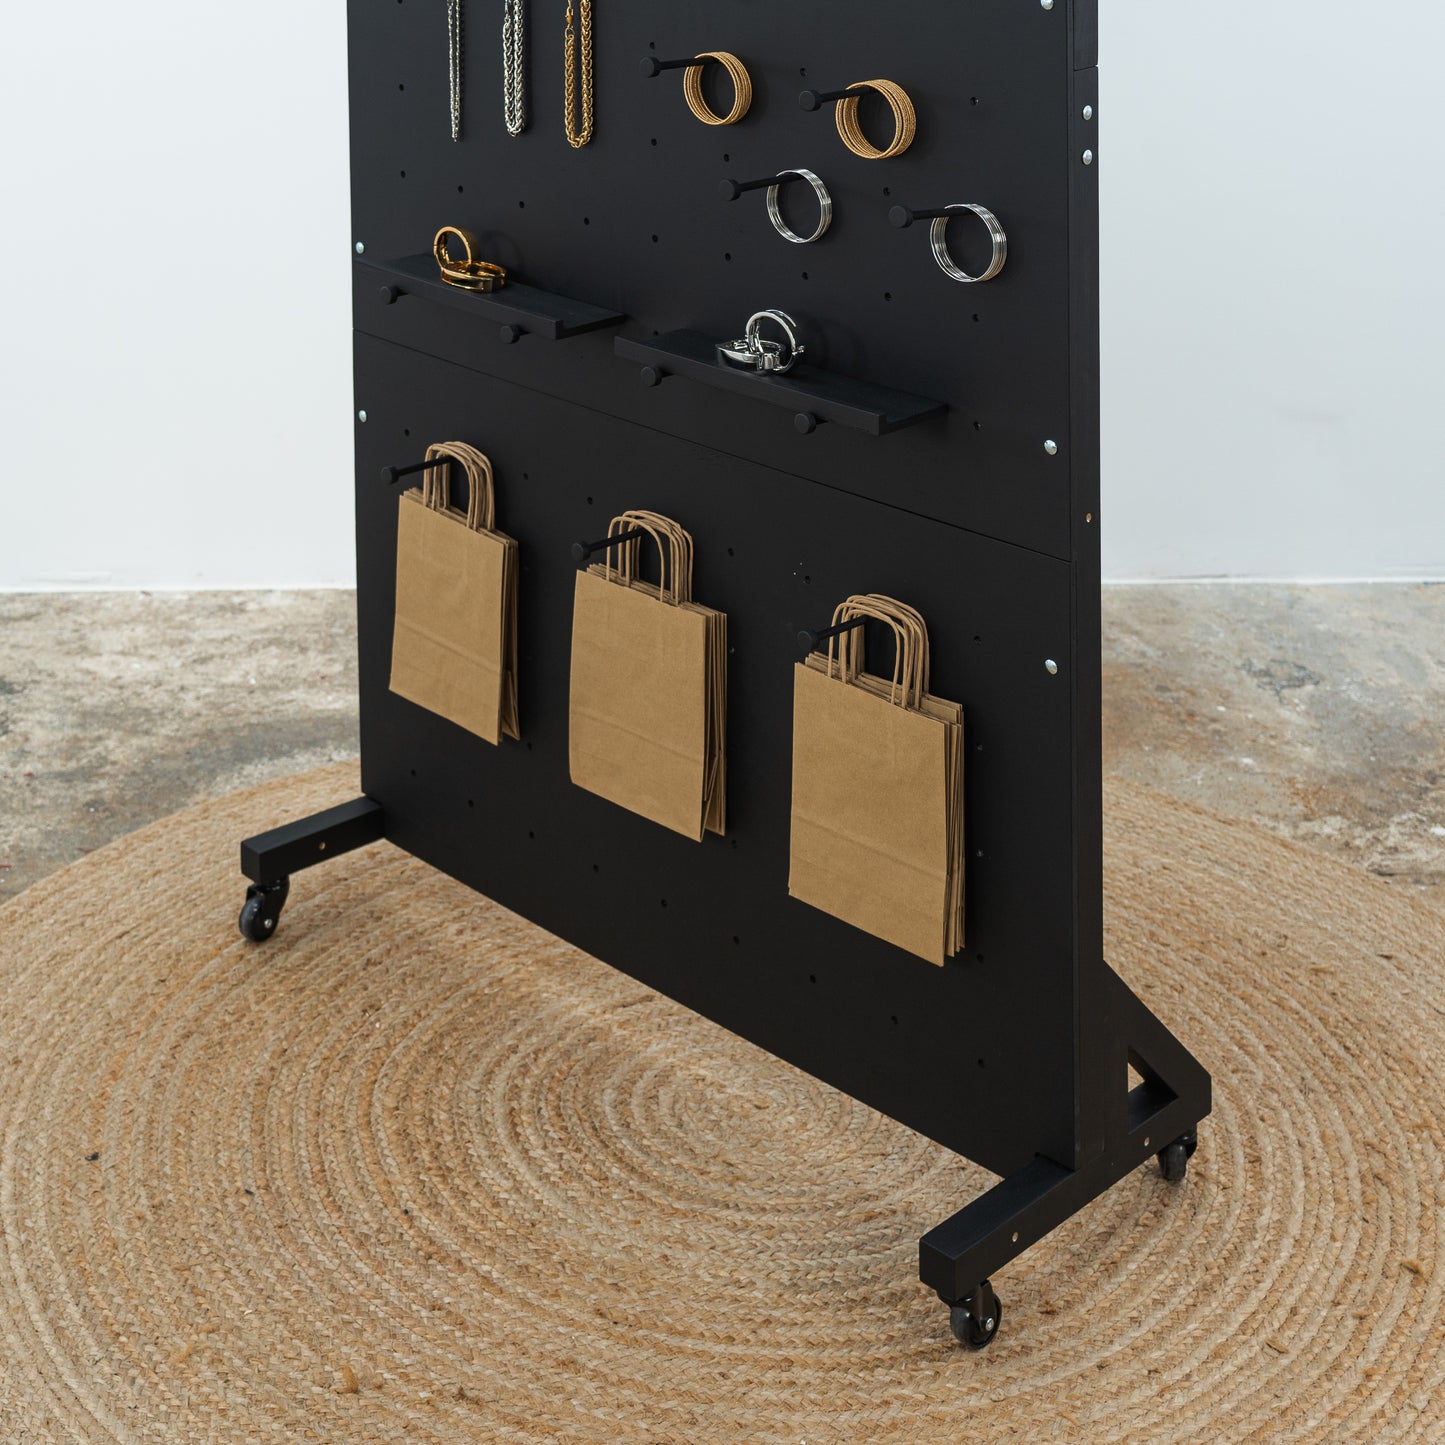 Display-Stecktafel VP-05-W-BL in schwarzer Farbe für Schmuck und Accessoires, auf Rollen, zusammenklappbar für den Einsatz auf Messen